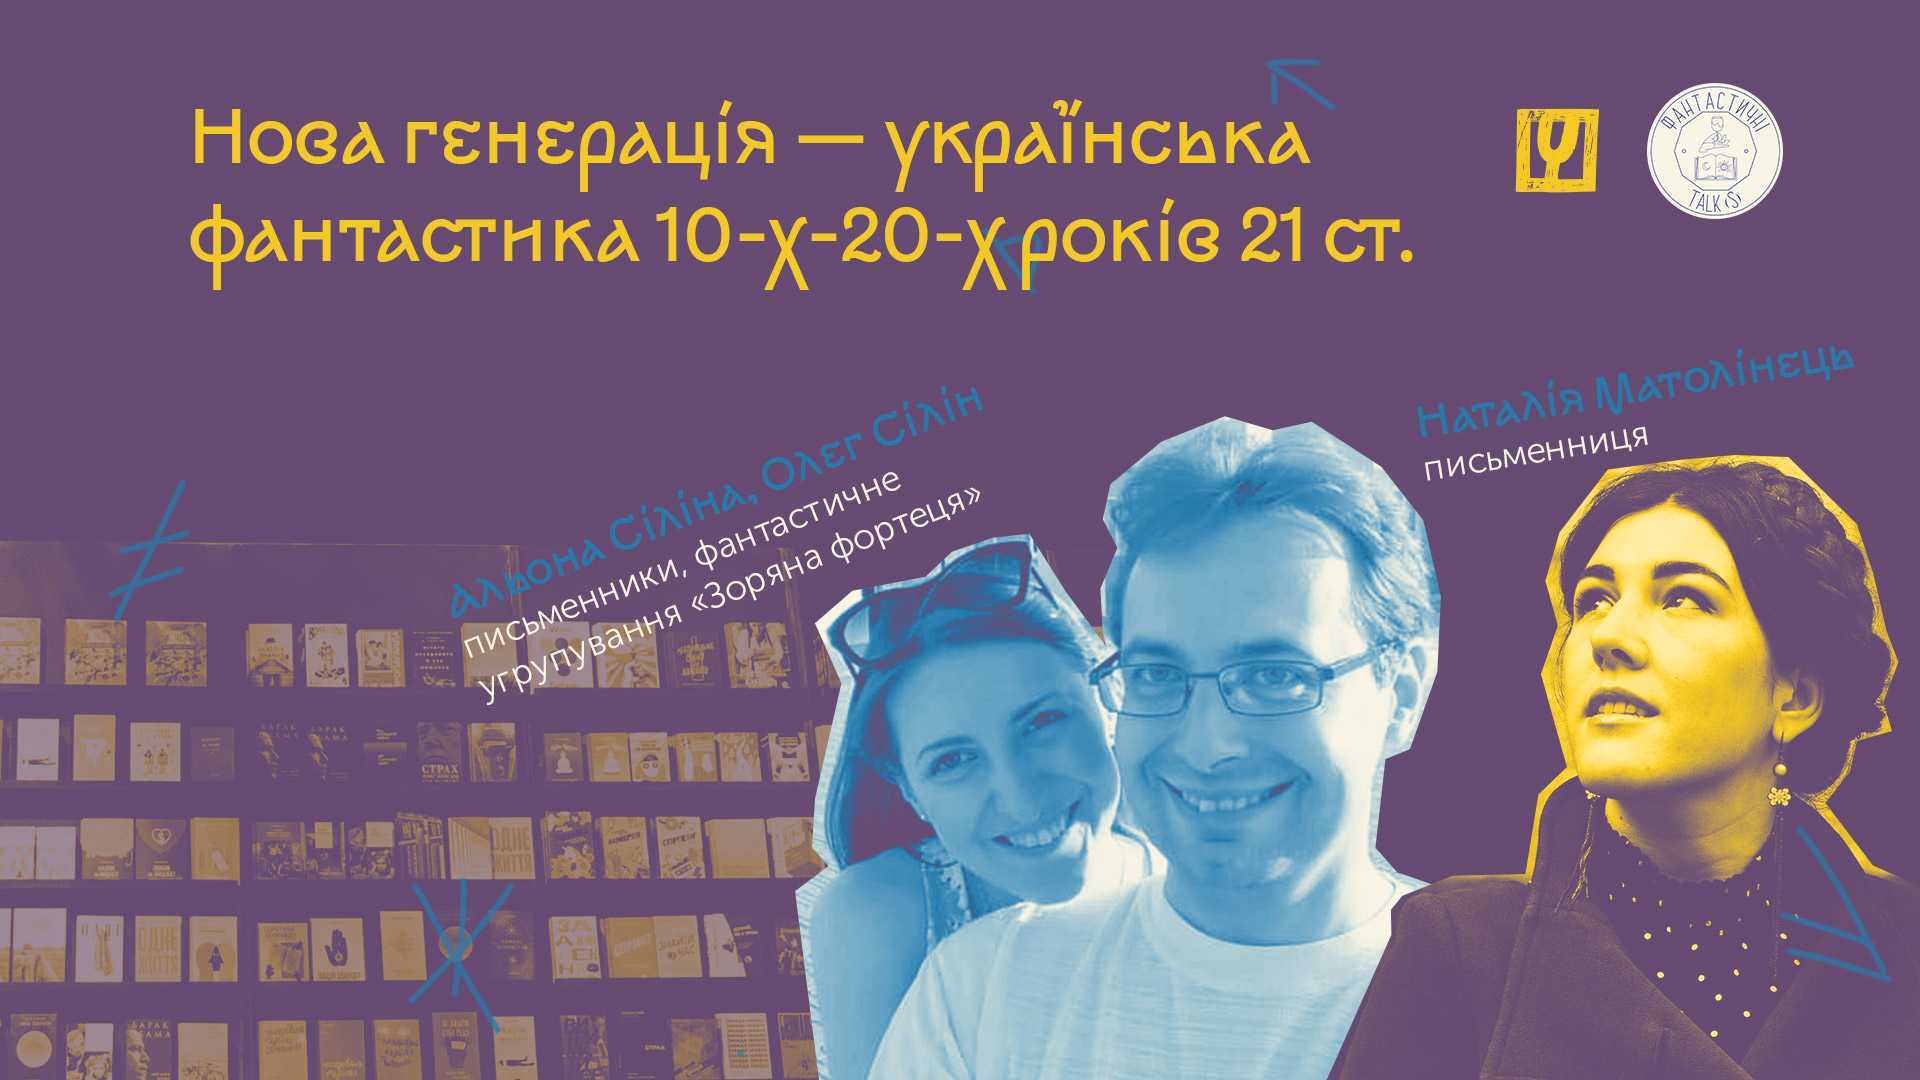 fantastychni afisha event 5 1 - Нова генерація — українська фантастика 2010–2020-х років